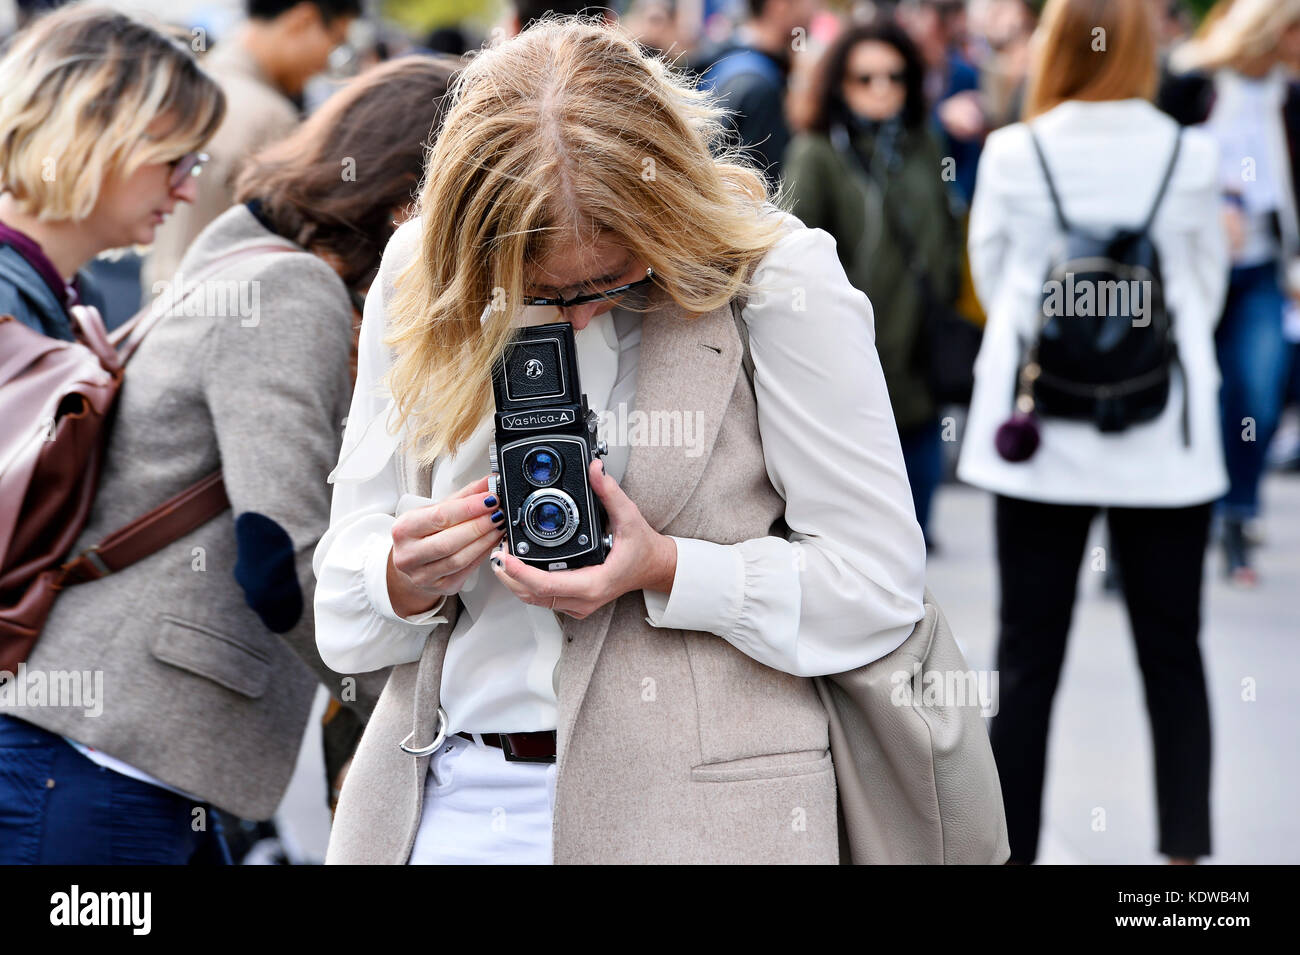 Yashica argentic camera, Paris - France Stock Photo